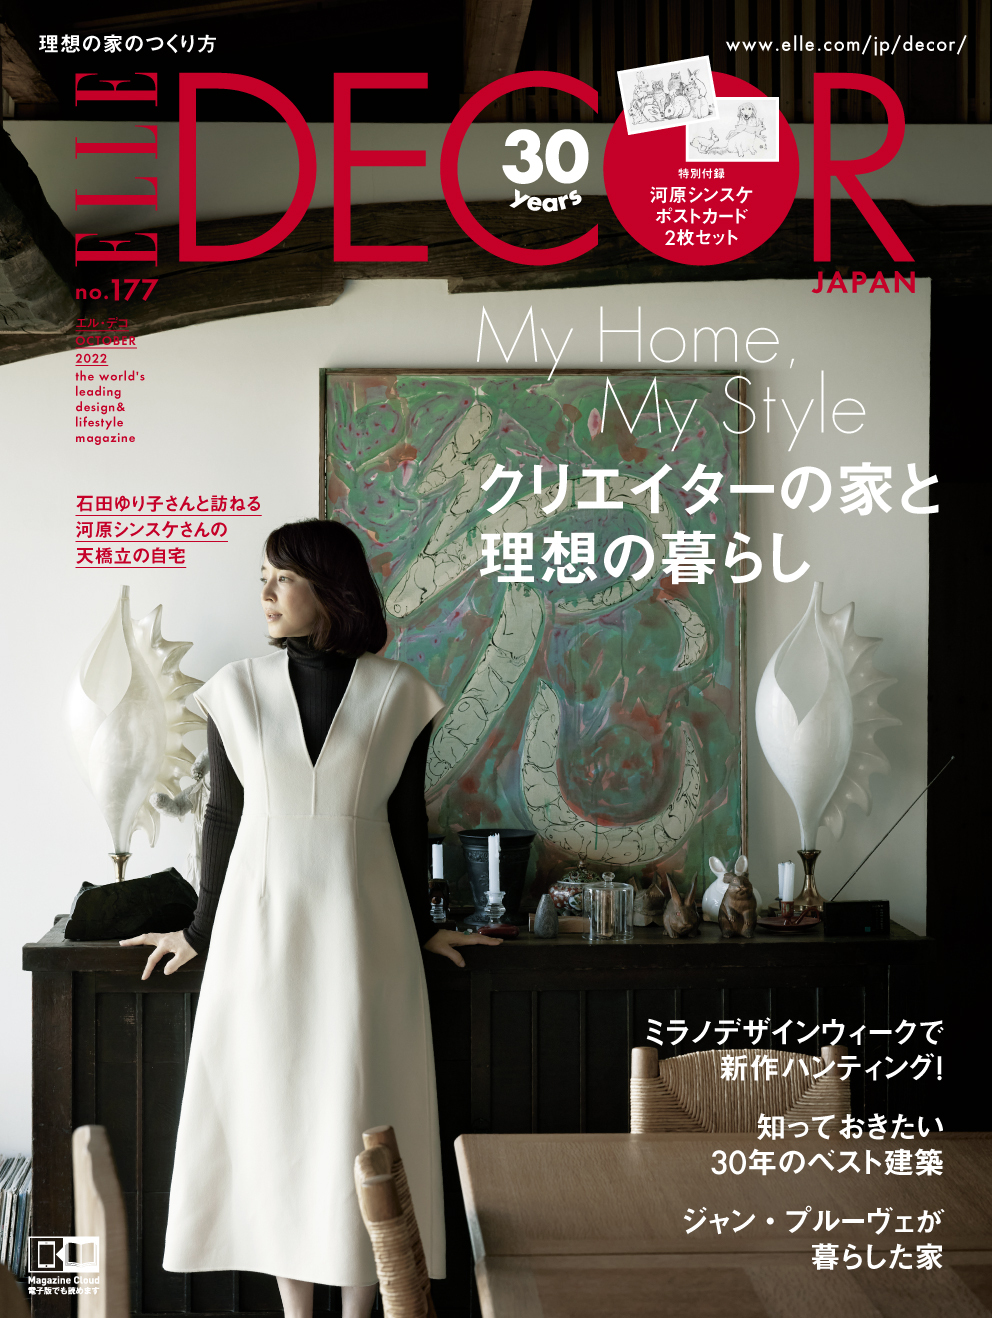 『エル・デコ』創刊30周年企画に石田ゆり子が登場の画像